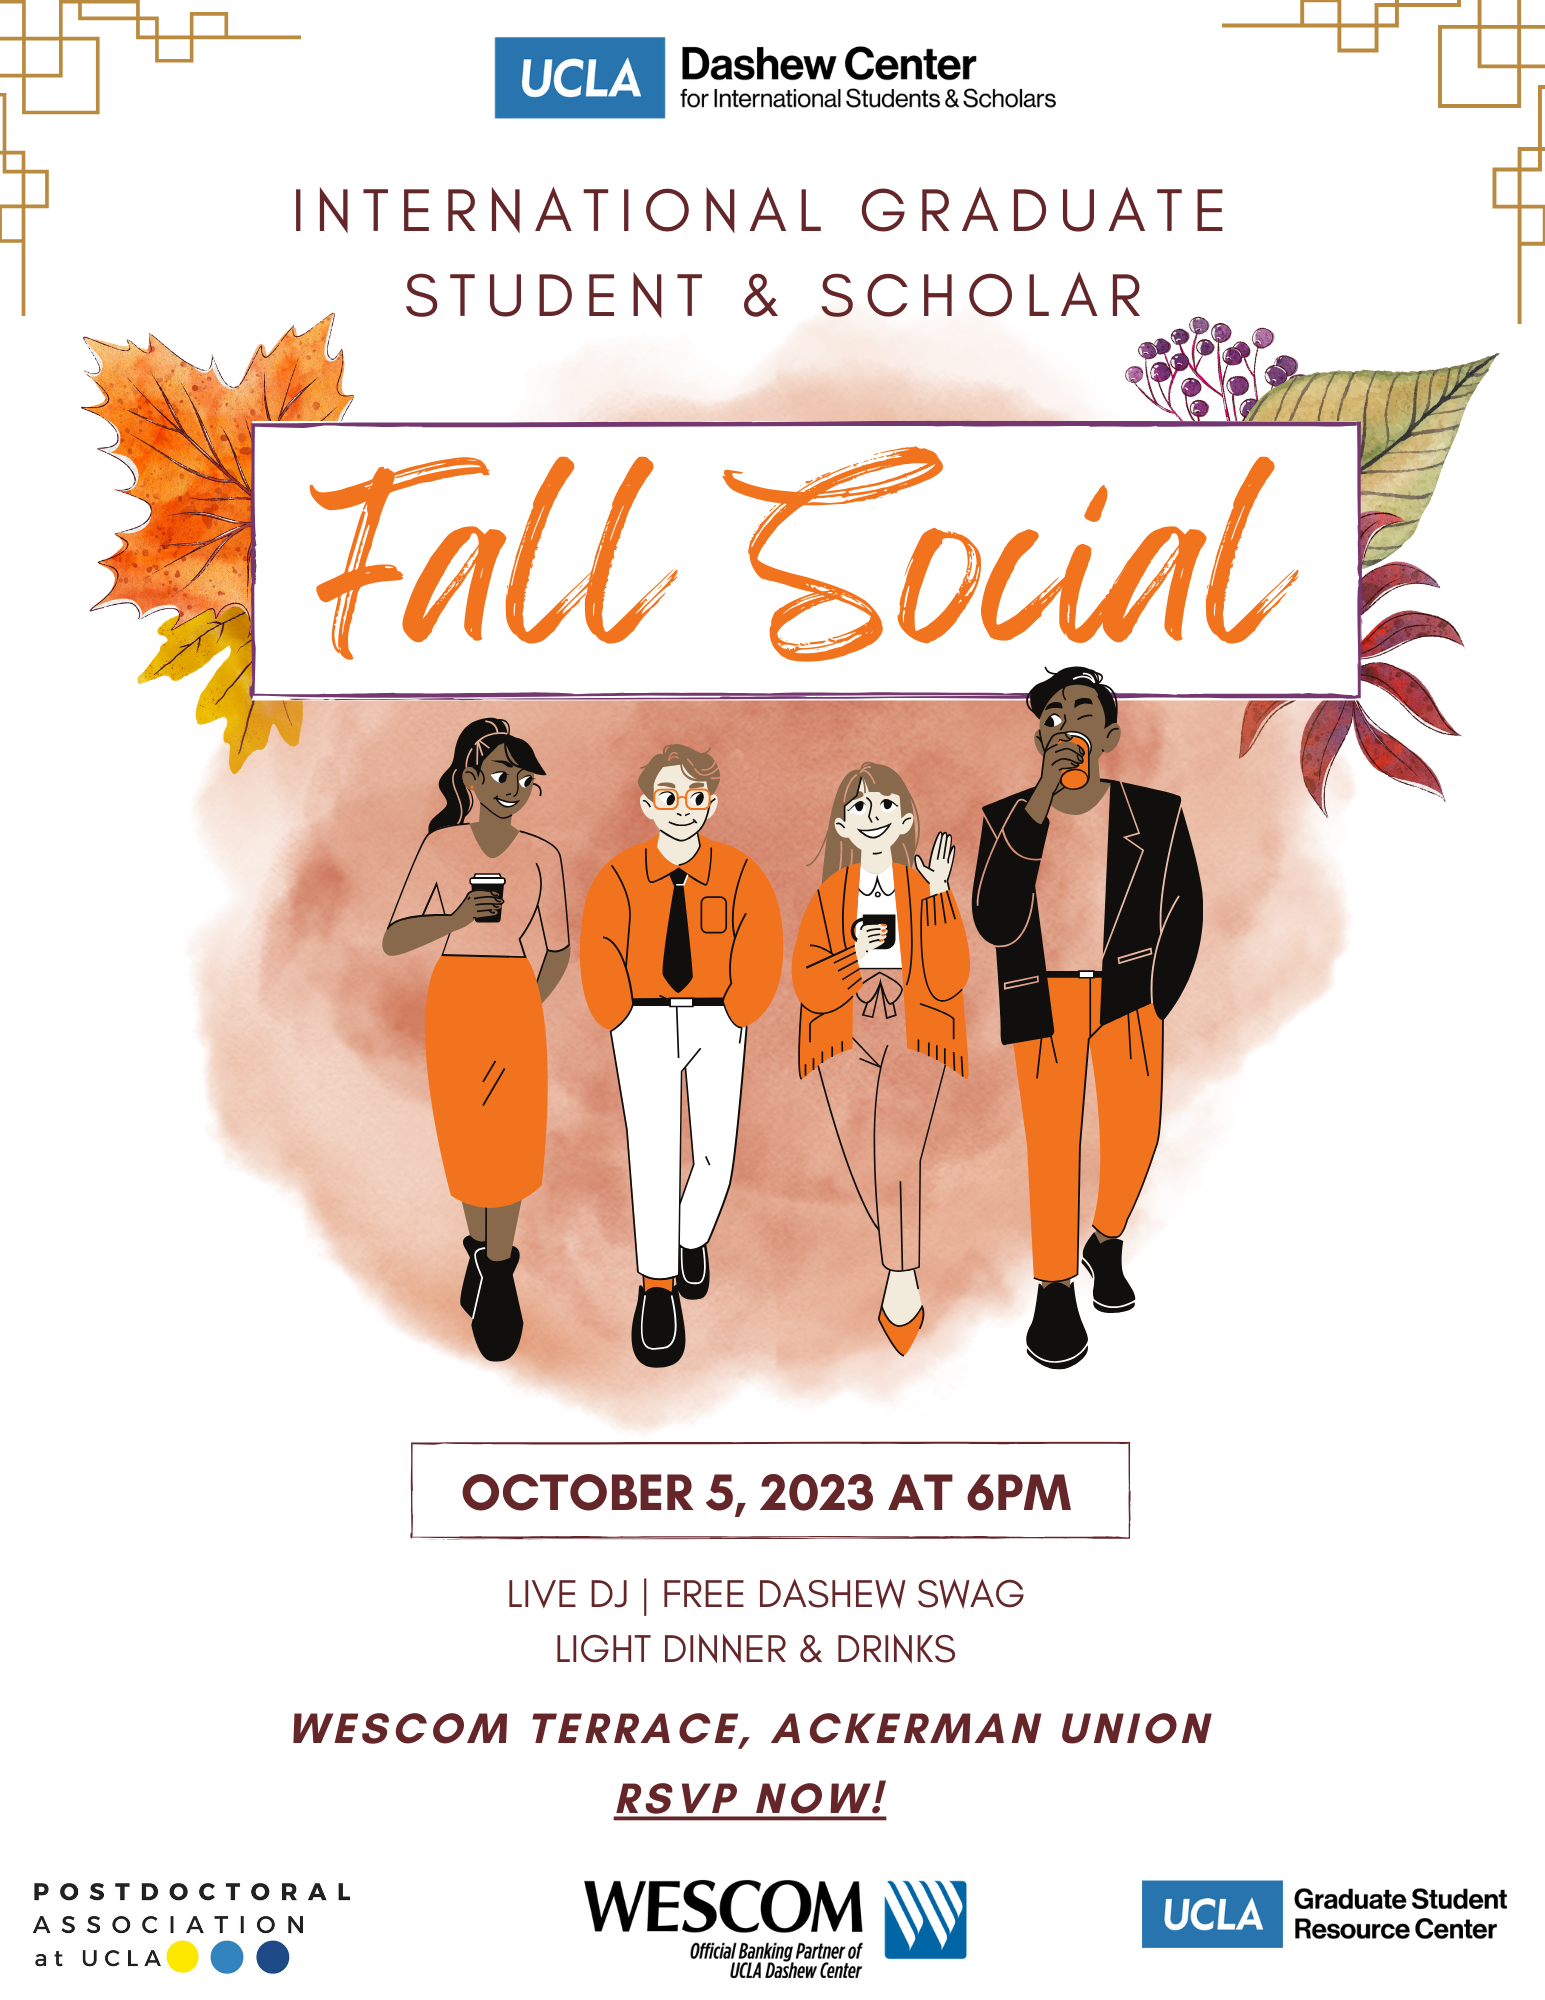 Intl Grad student & Scholar Fall Social Event 2023  flyer